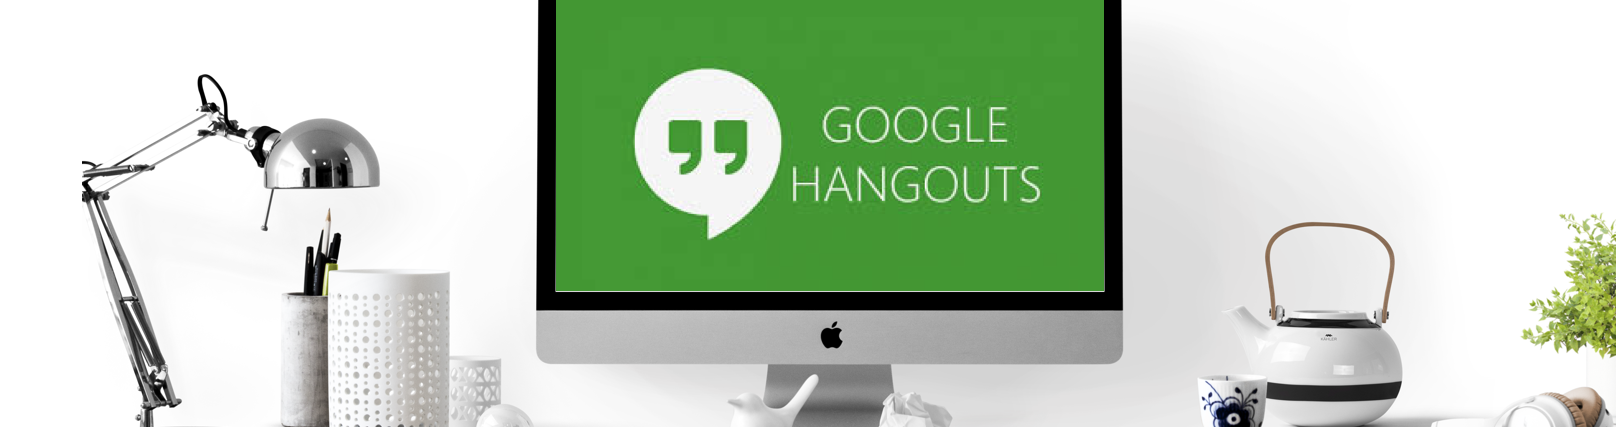 La visioconférence avec Google Meet (Hangouts)